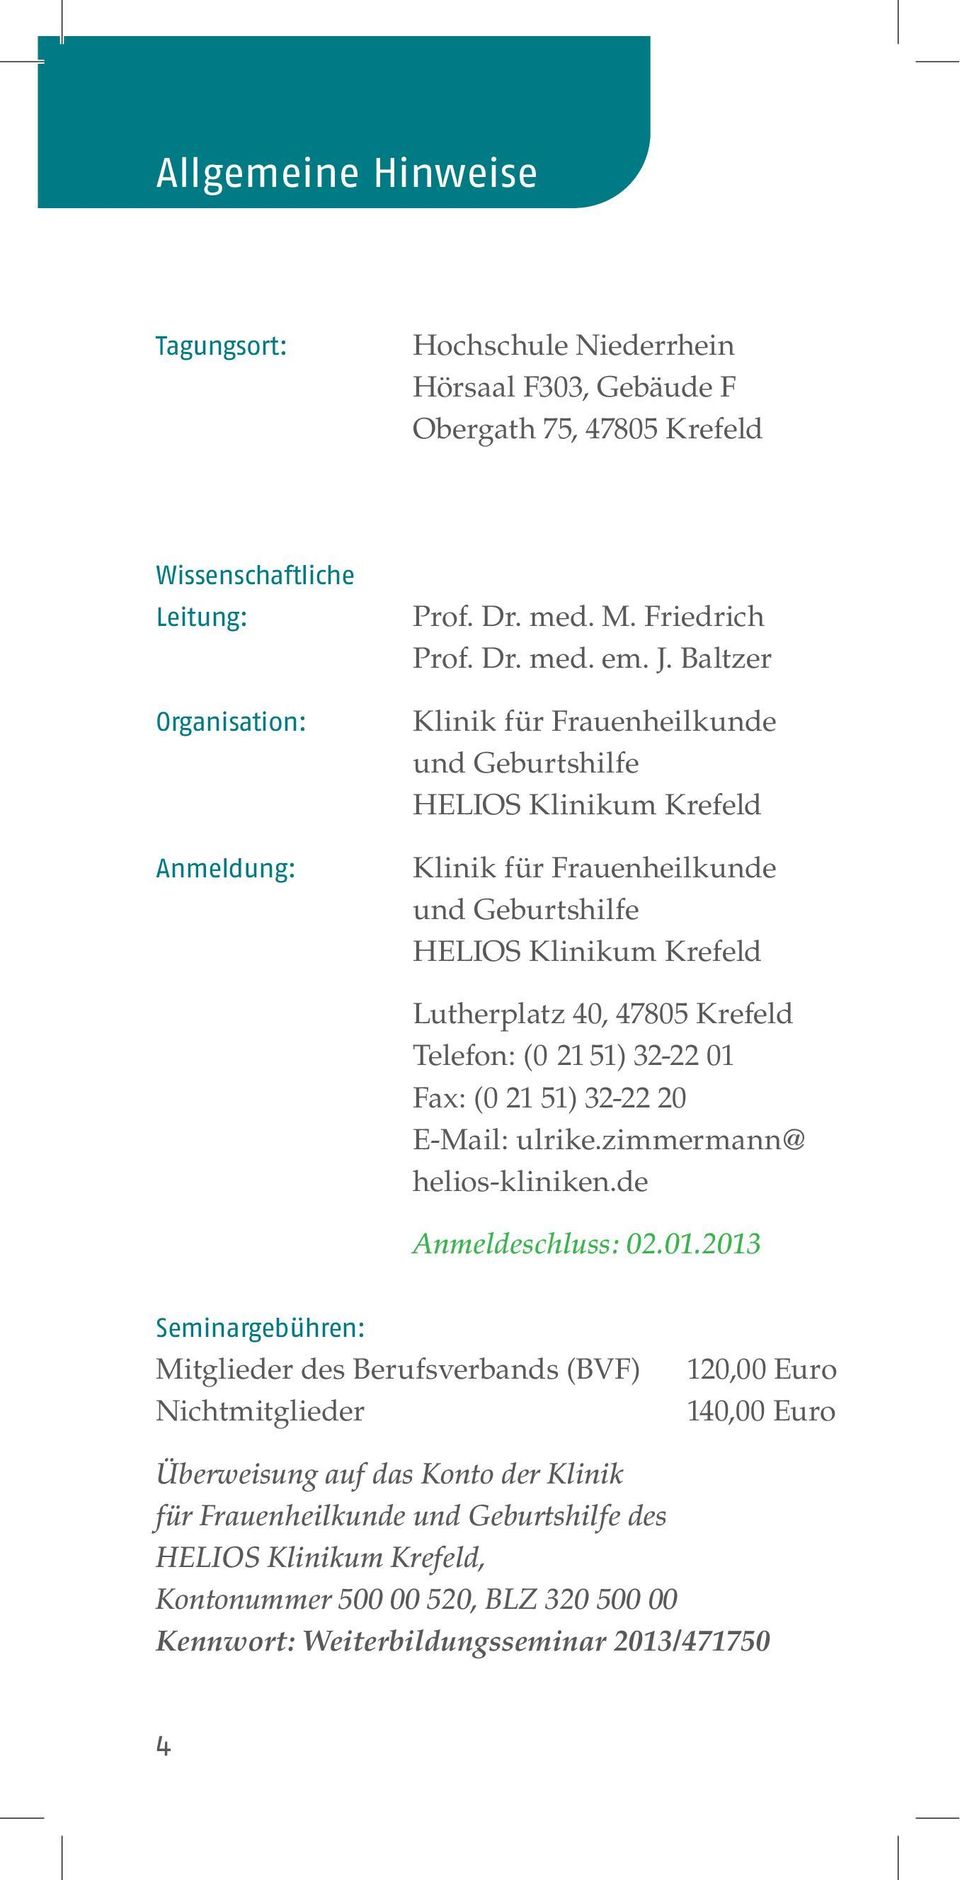 Baltzer Klinik für Frauenheilkunde und Geburtshilfe Klinik für Frauenheilkunde und Geburtshilfe Lutherplatz 40, 47805 Krefeld Telefon: (0 21 51) 32-22 01 Fax: (0 21 51) 32-22 20